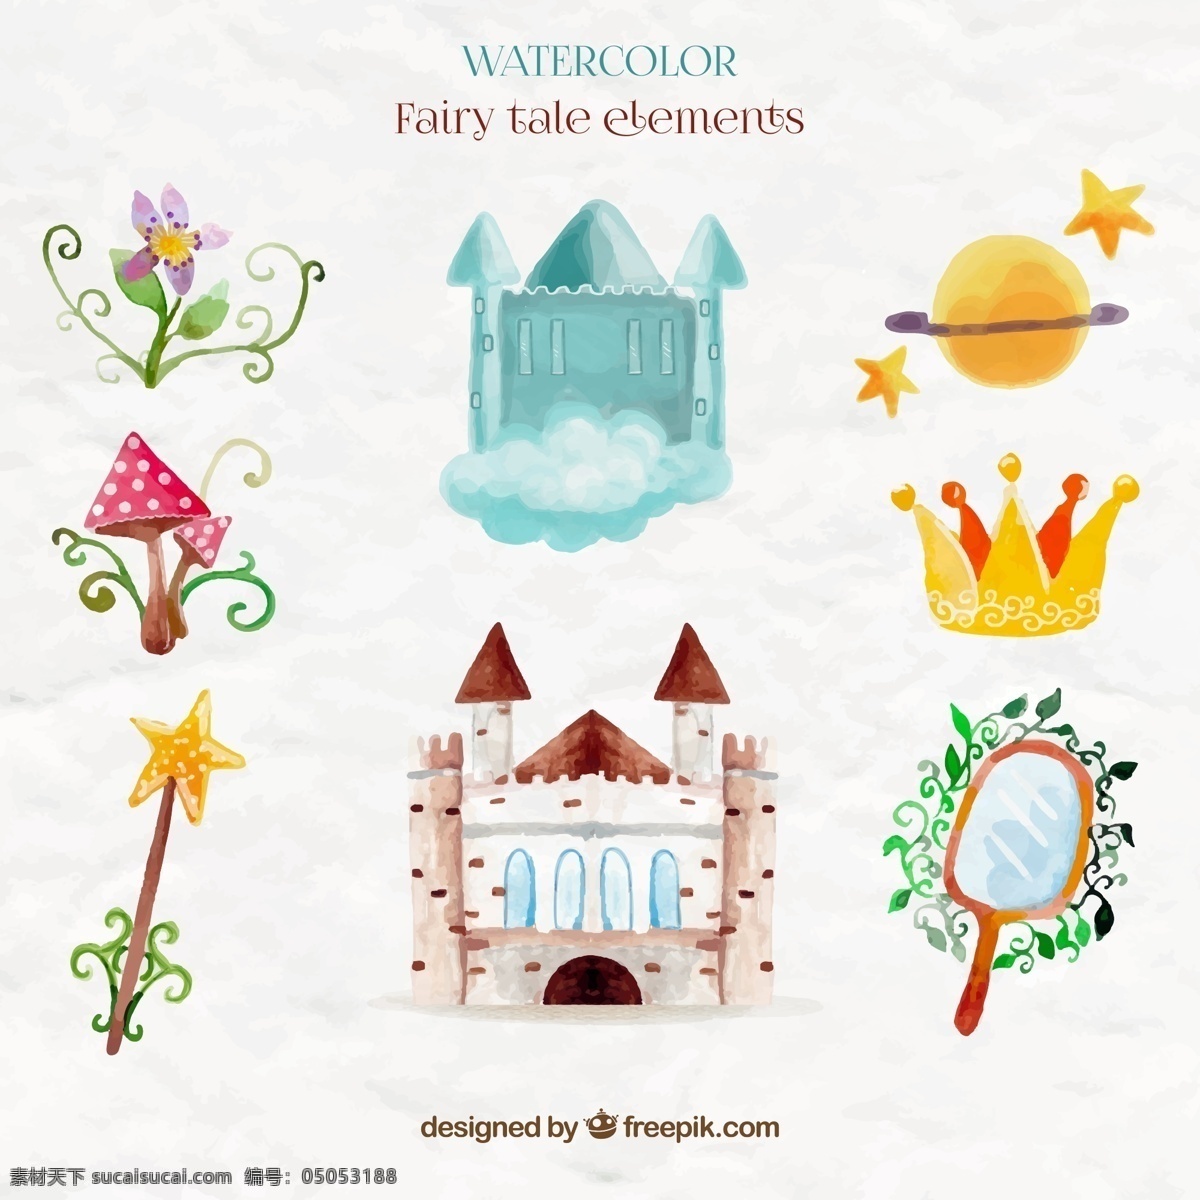 款 水彩 绘 童话 元素 矢量 花朵 蘑菇 王冠 星球 镜子 魔法棒 城堡 仙境 故事 矢量图